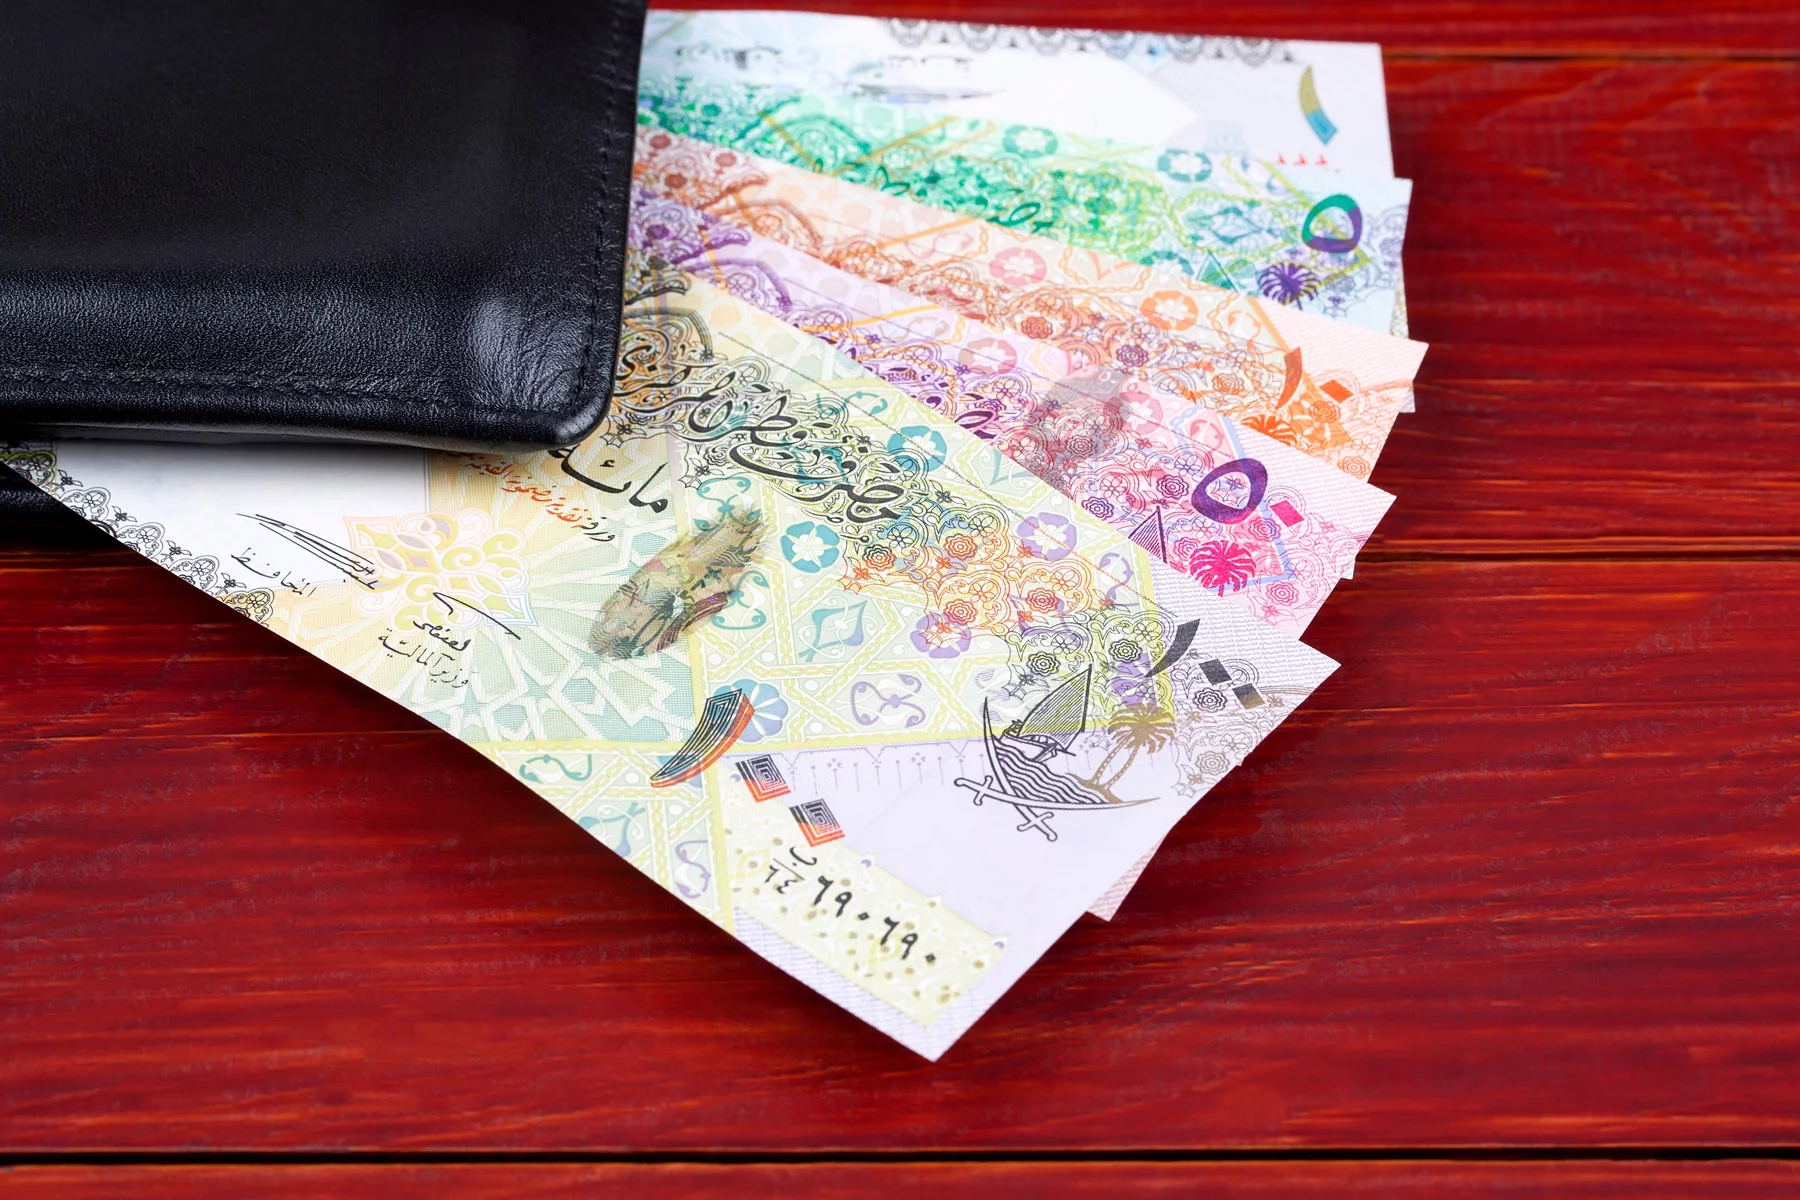 Qatar riyal notes in a wallet